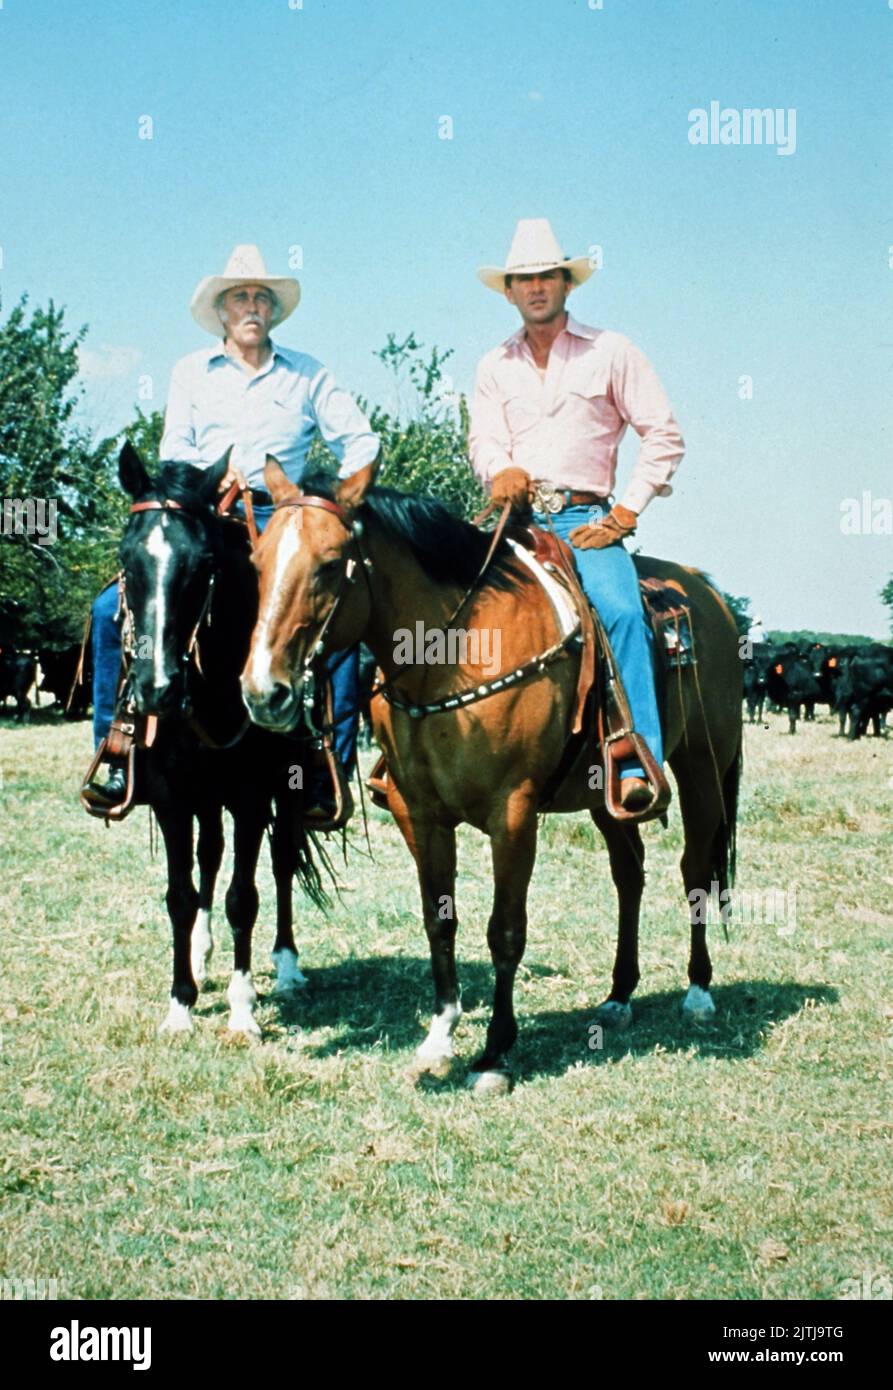 Dallas, Fernsehserie, EE.UU. 1978 - 1991, Darsteller: Howard Keel, Patrick Duffy Foto de stock